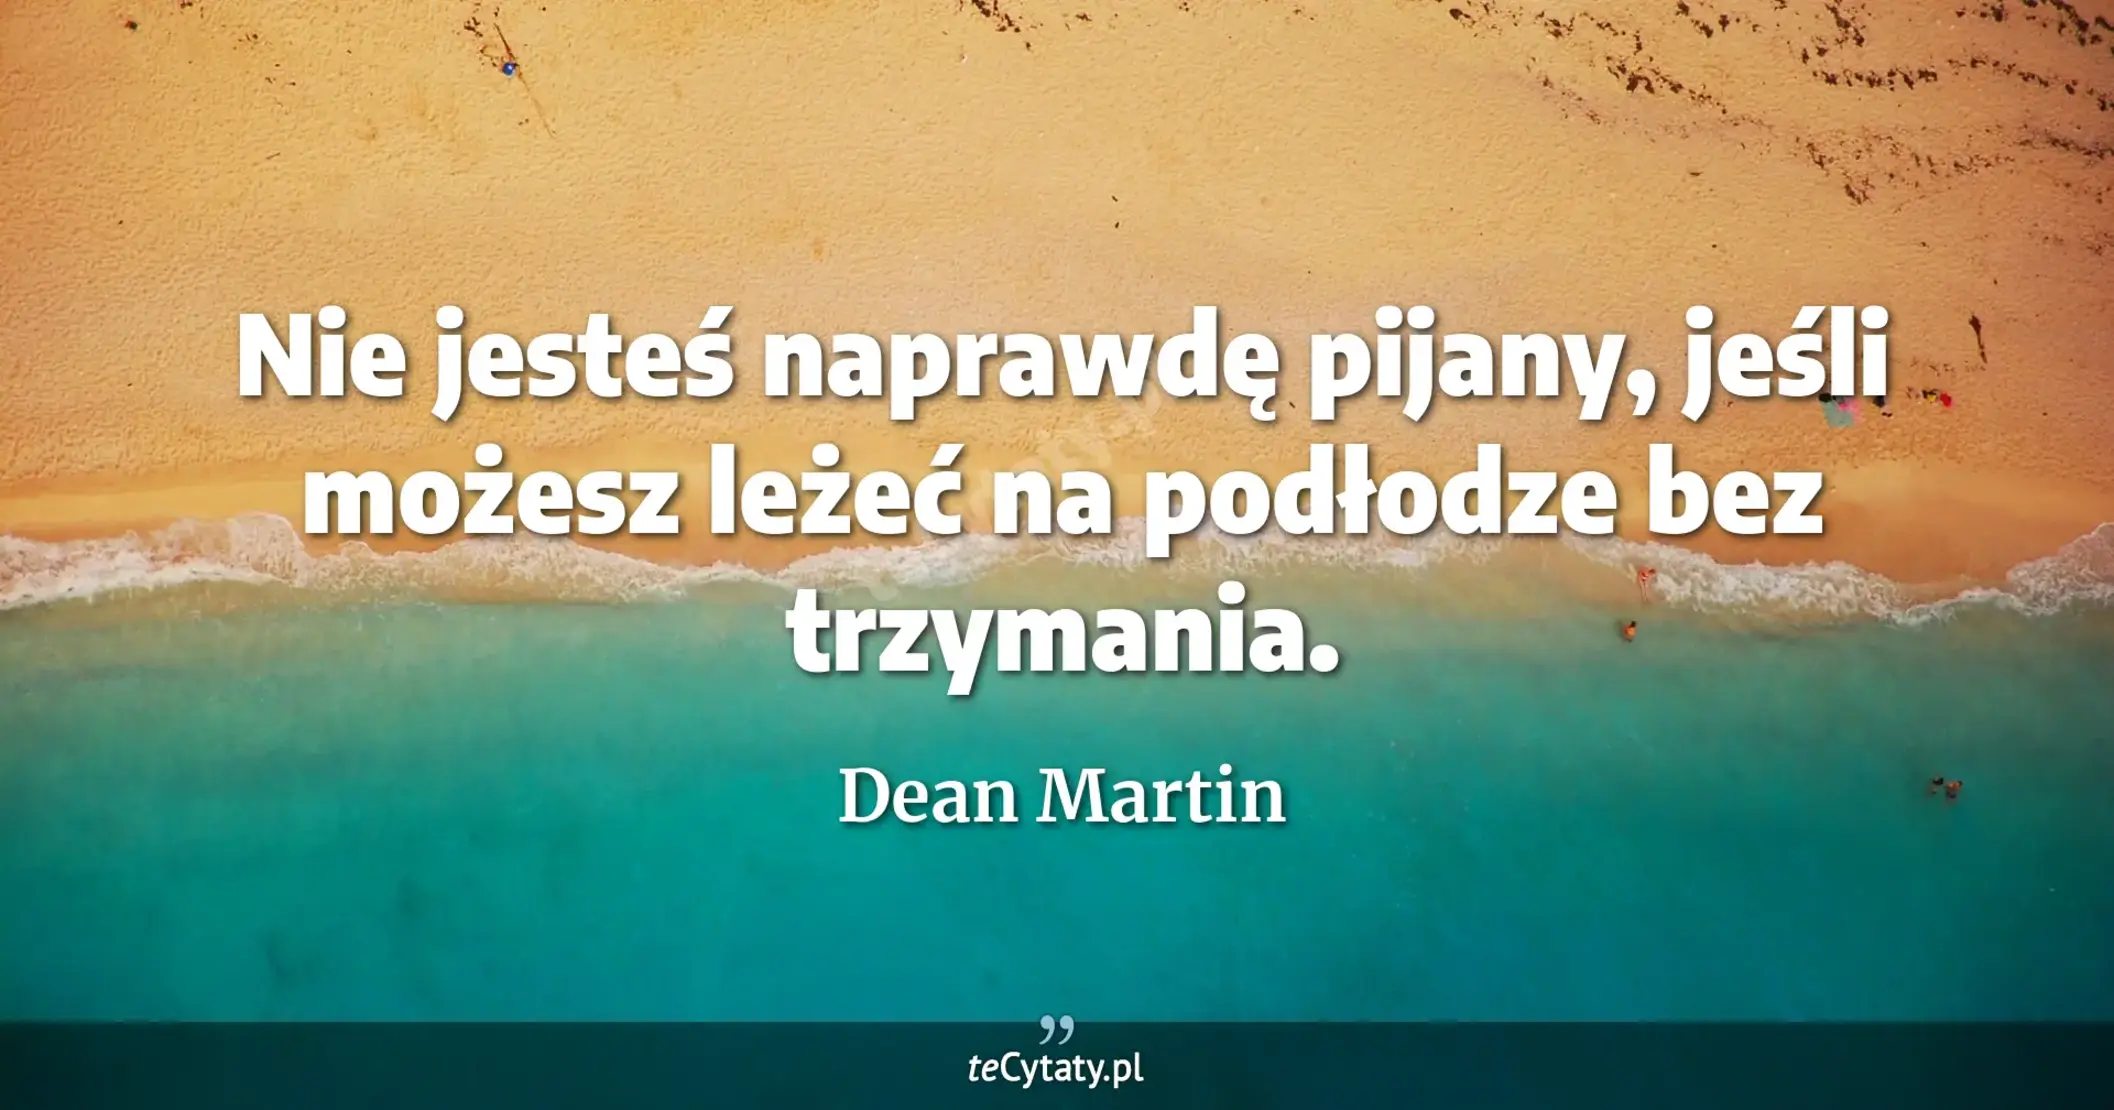 Nie jesteś naprawdę pijany, jeśli możesz leżeć na podłodze bez trzymania. - Dean Martin